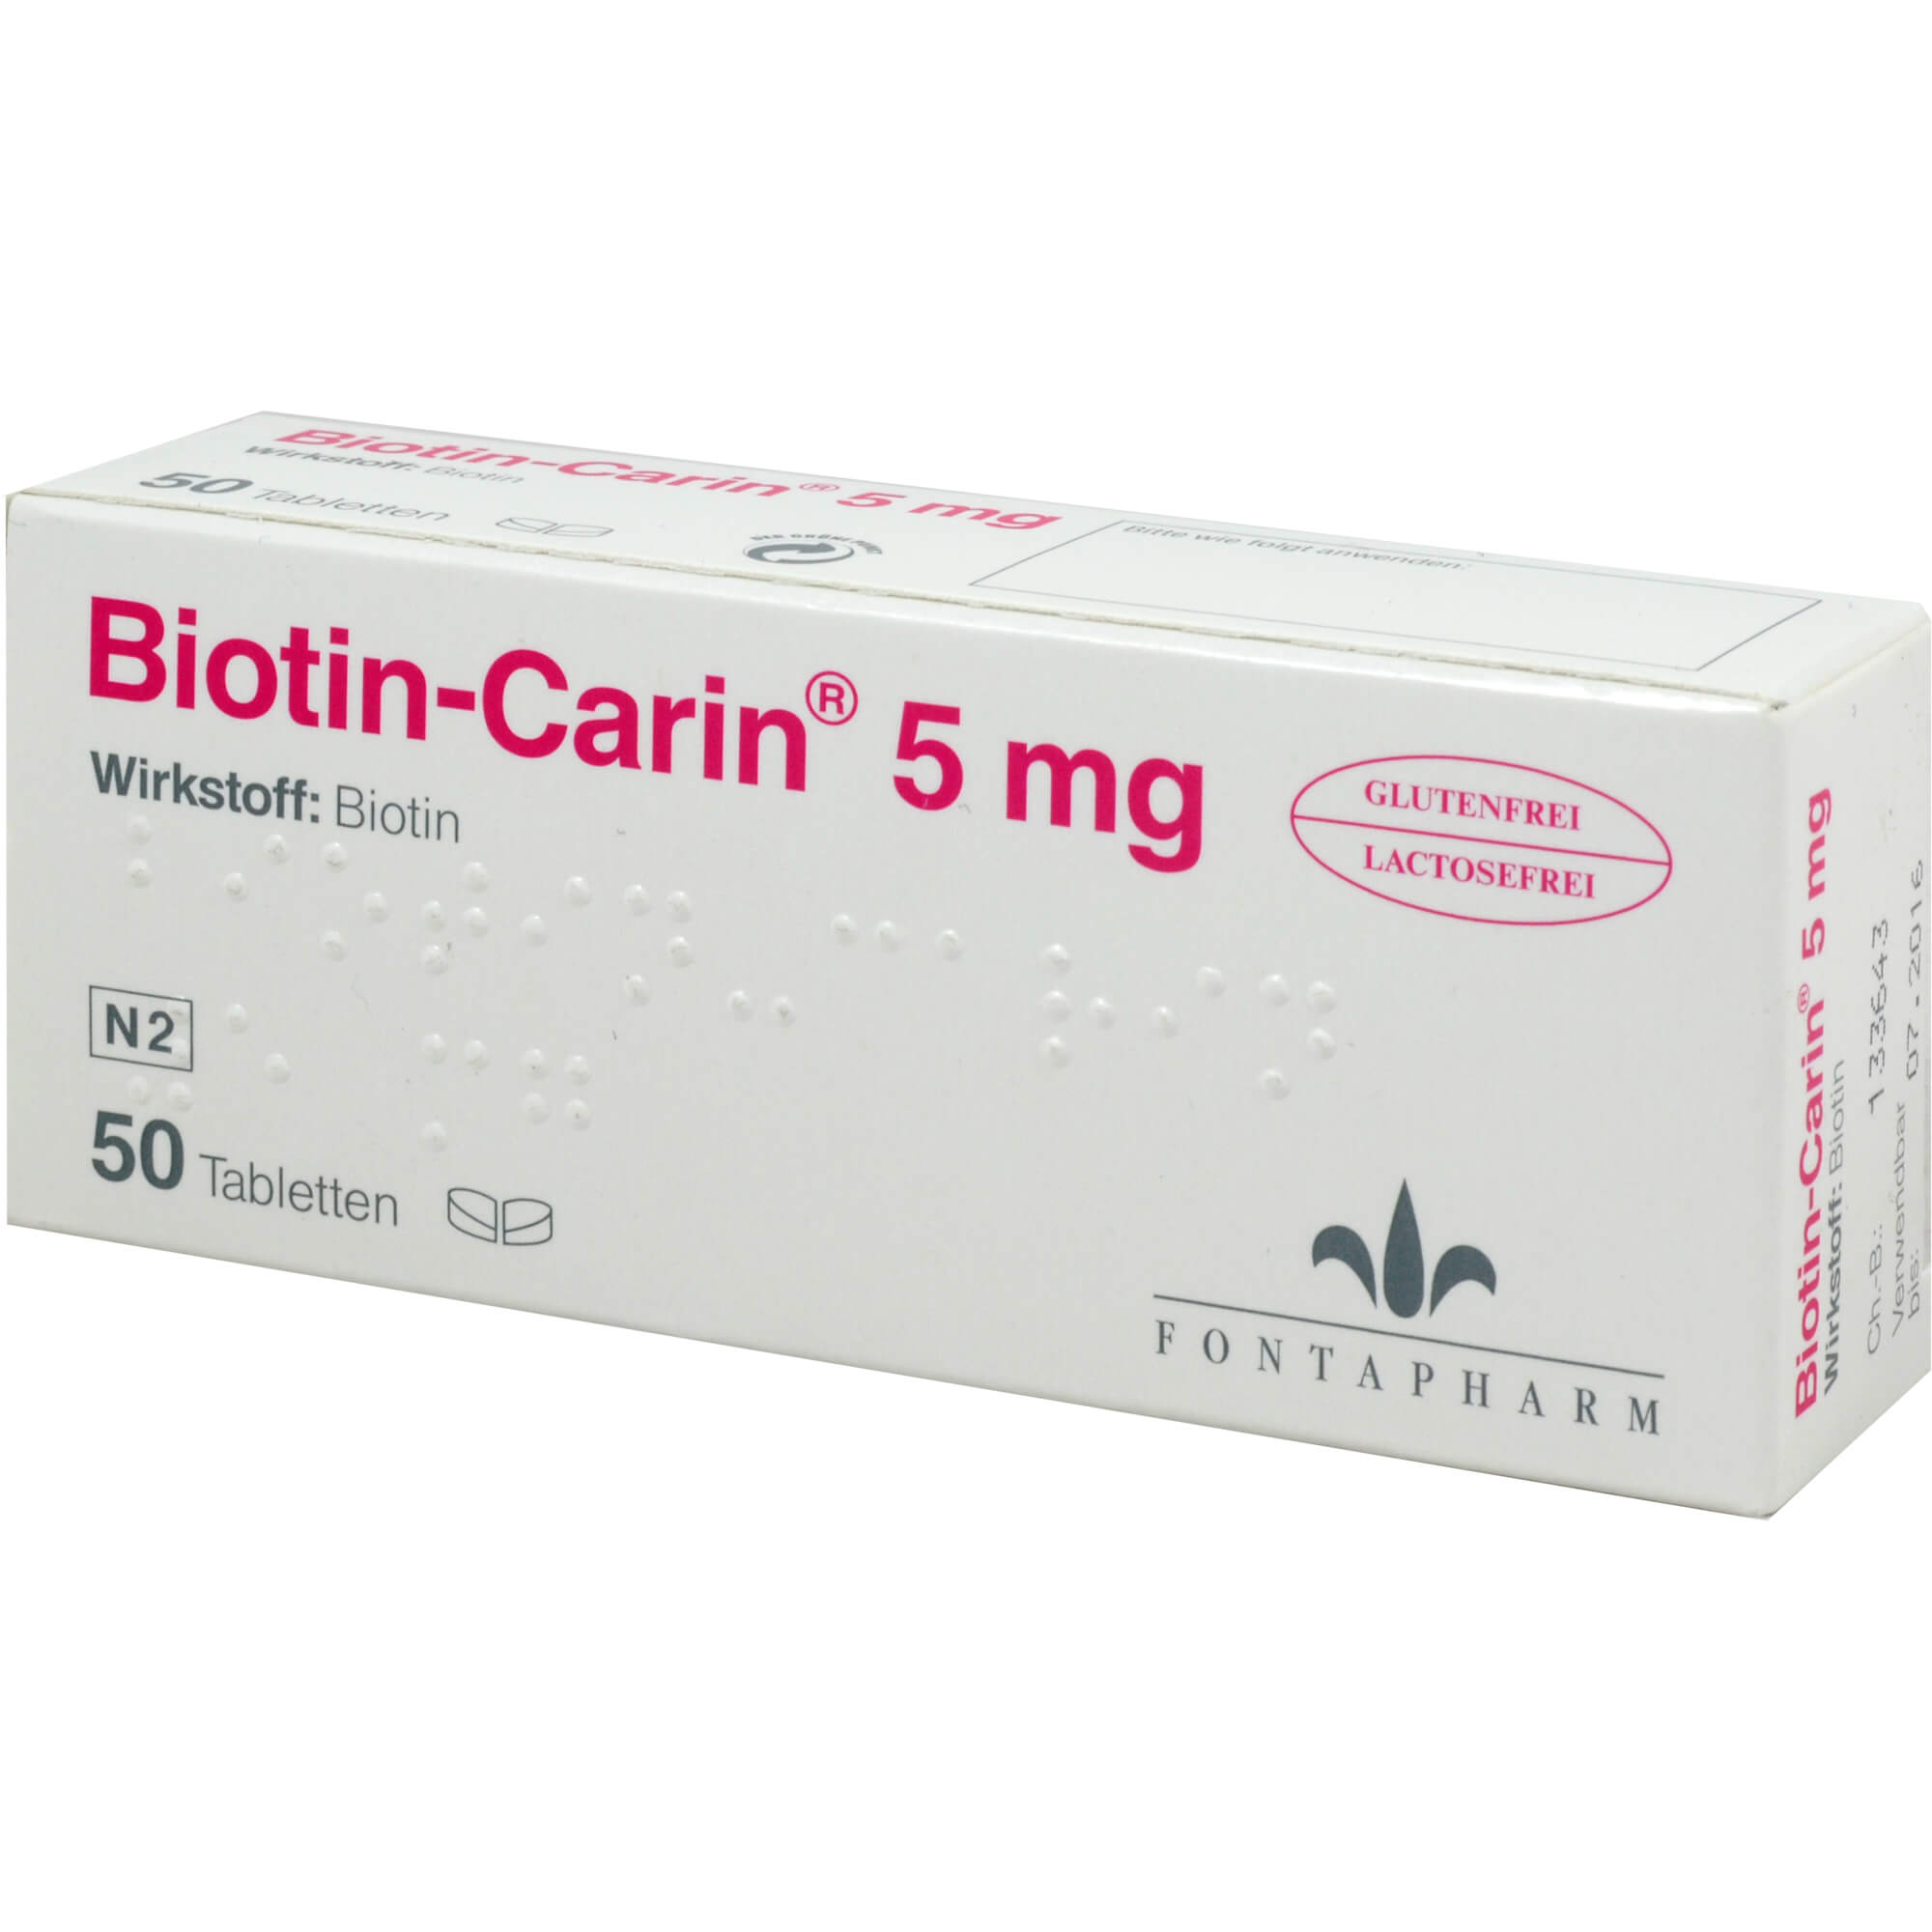 Vitaminpräparat zur Vorbeugung eines Biotin-Mangels.